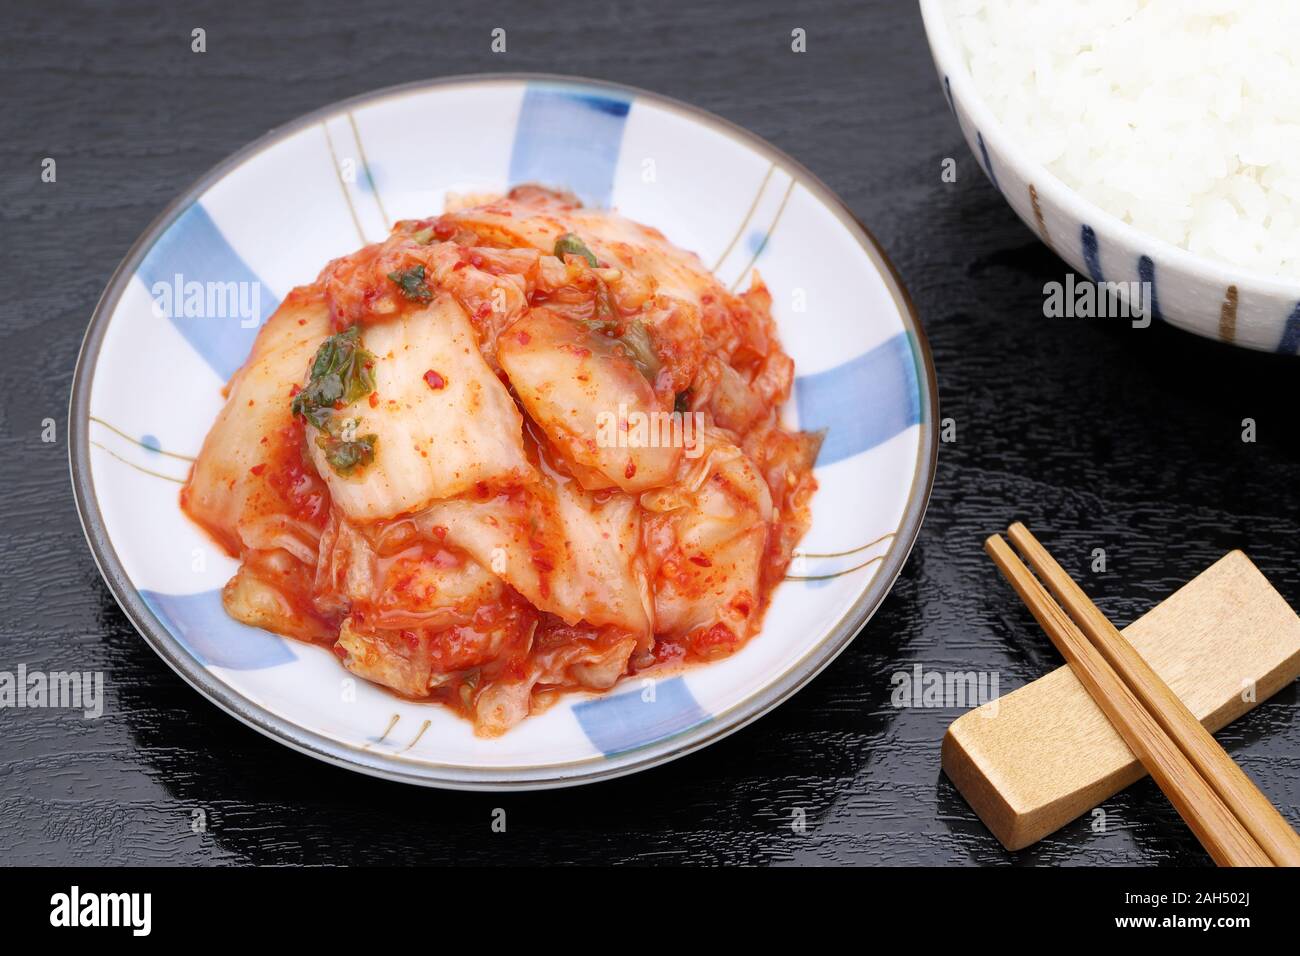 Le kimchi, la nourriture coréenne close up sur fond noir Banque D'Images